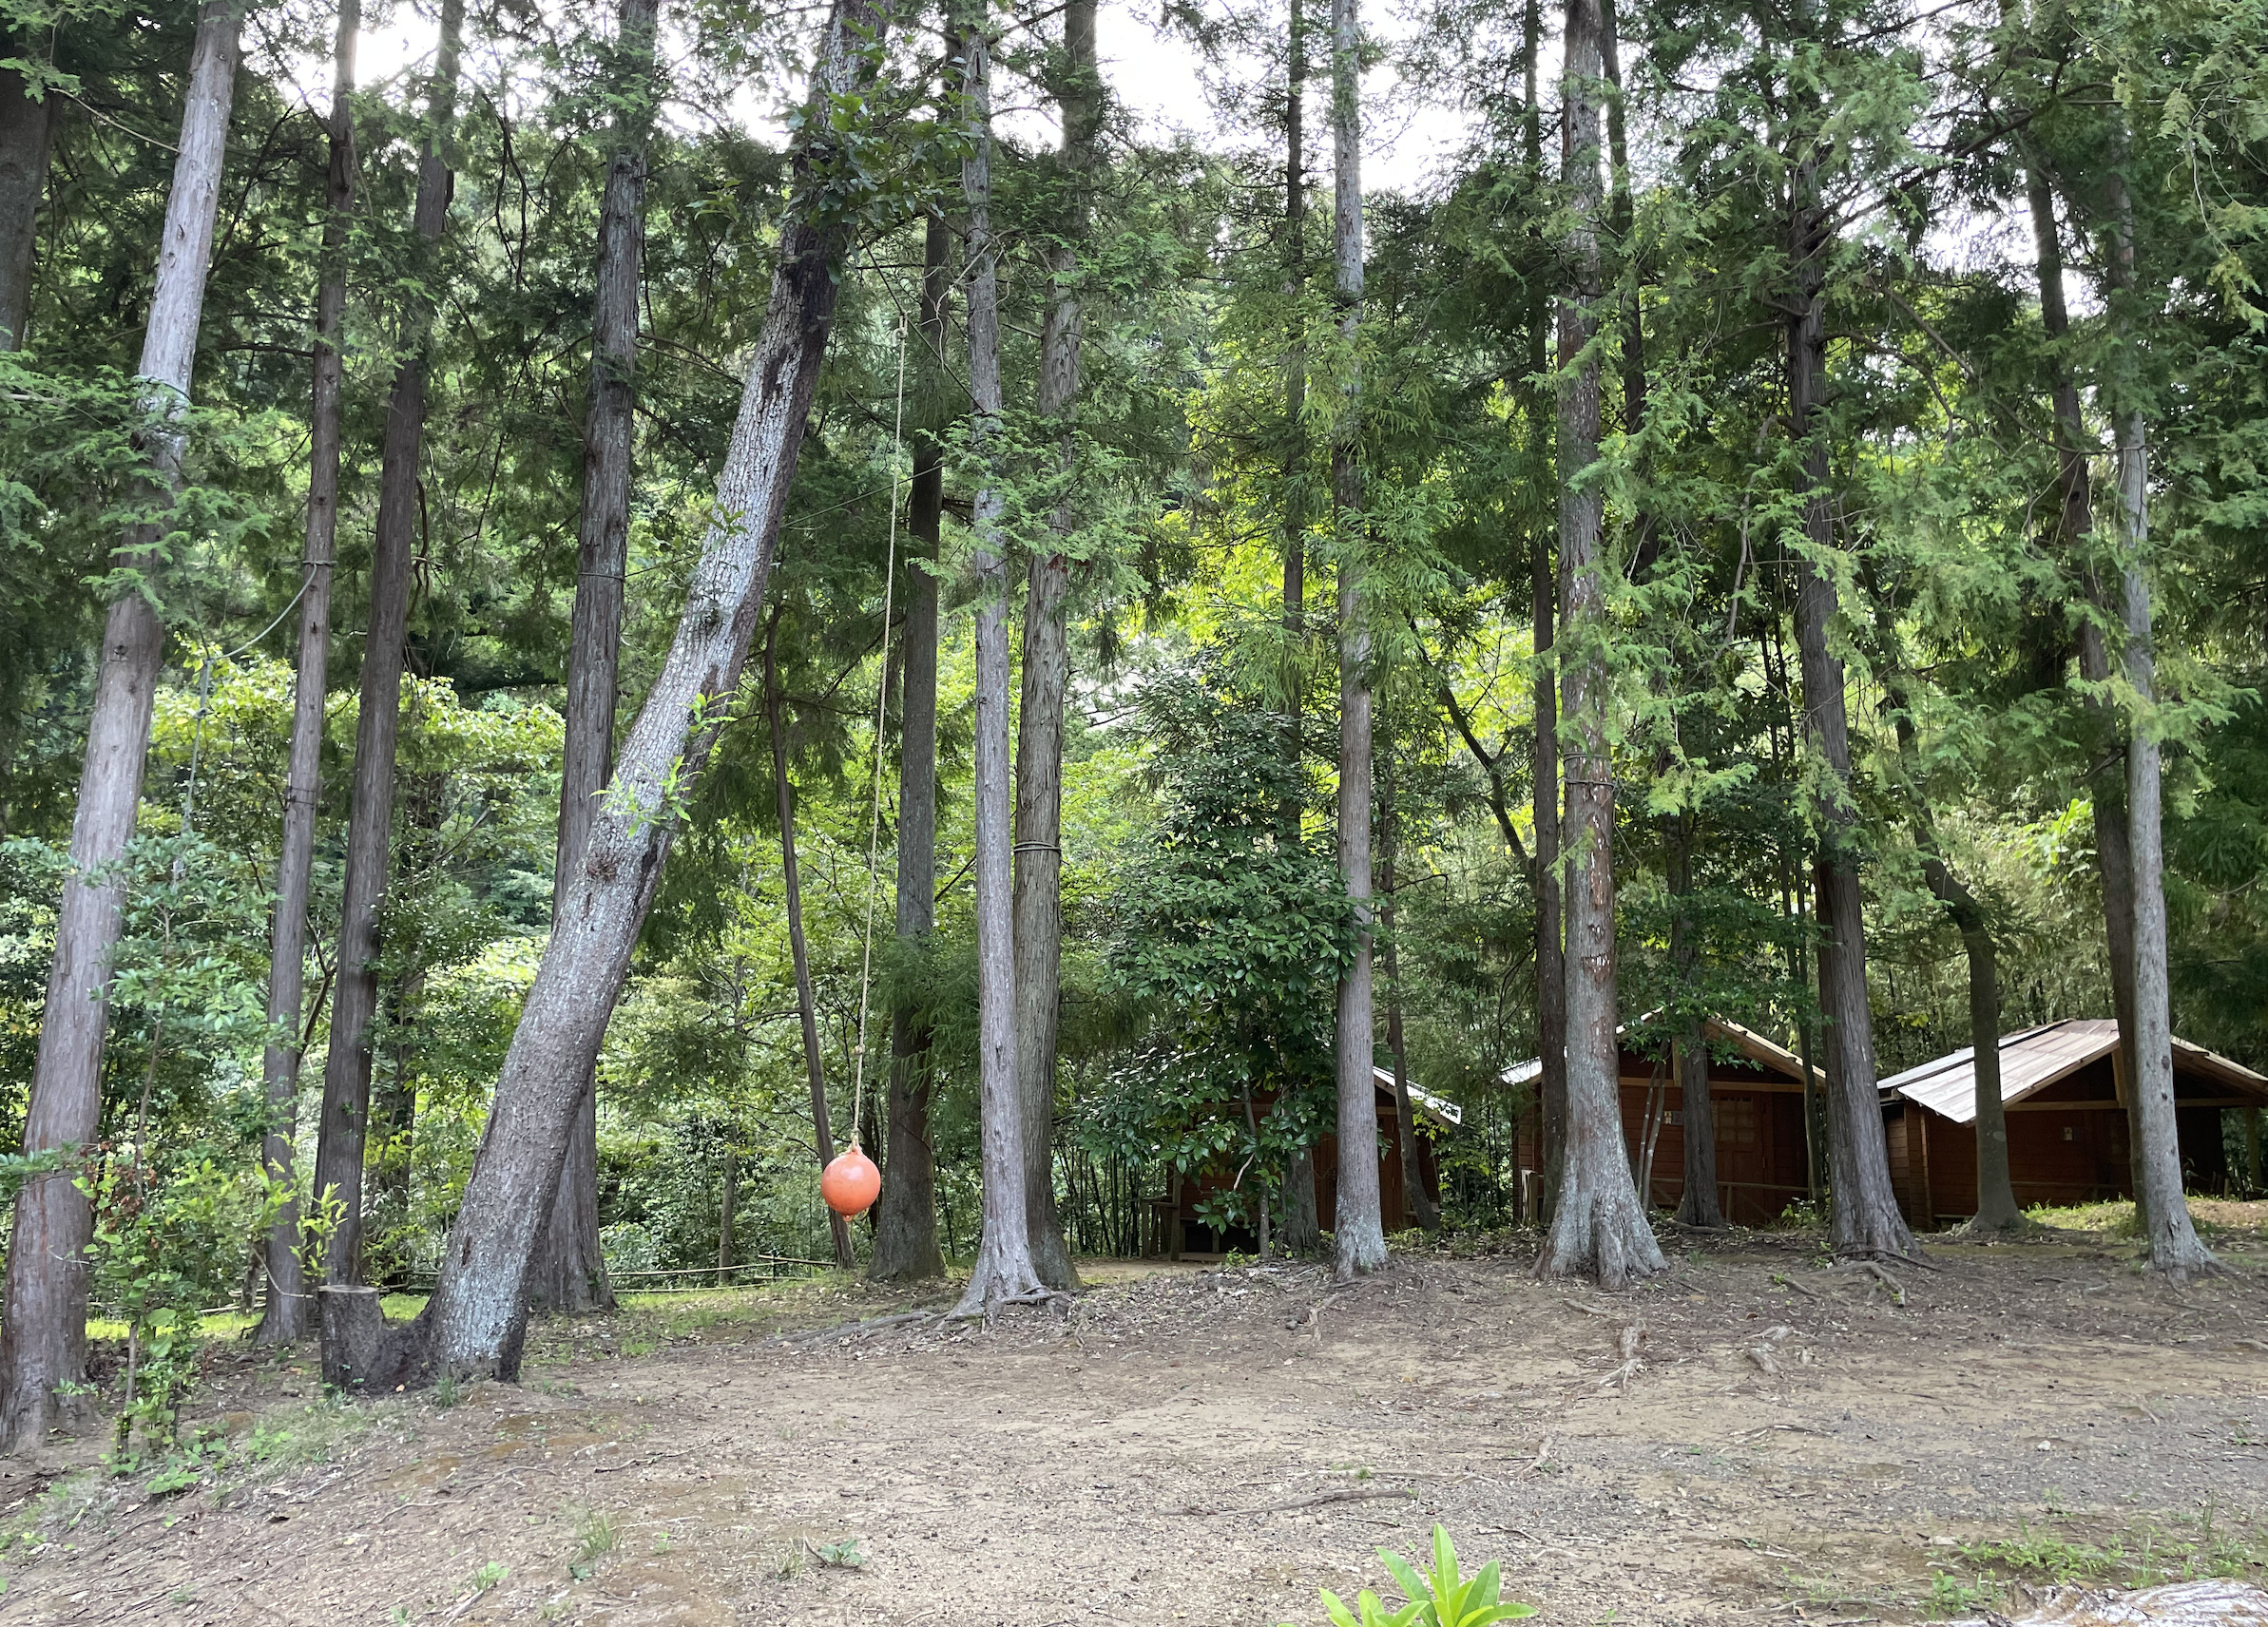 オートキャンプフルーツ村Bサイト〜C5サイト（林間サイト）にはサイト内にボールを吊るされた遊具がある場所も